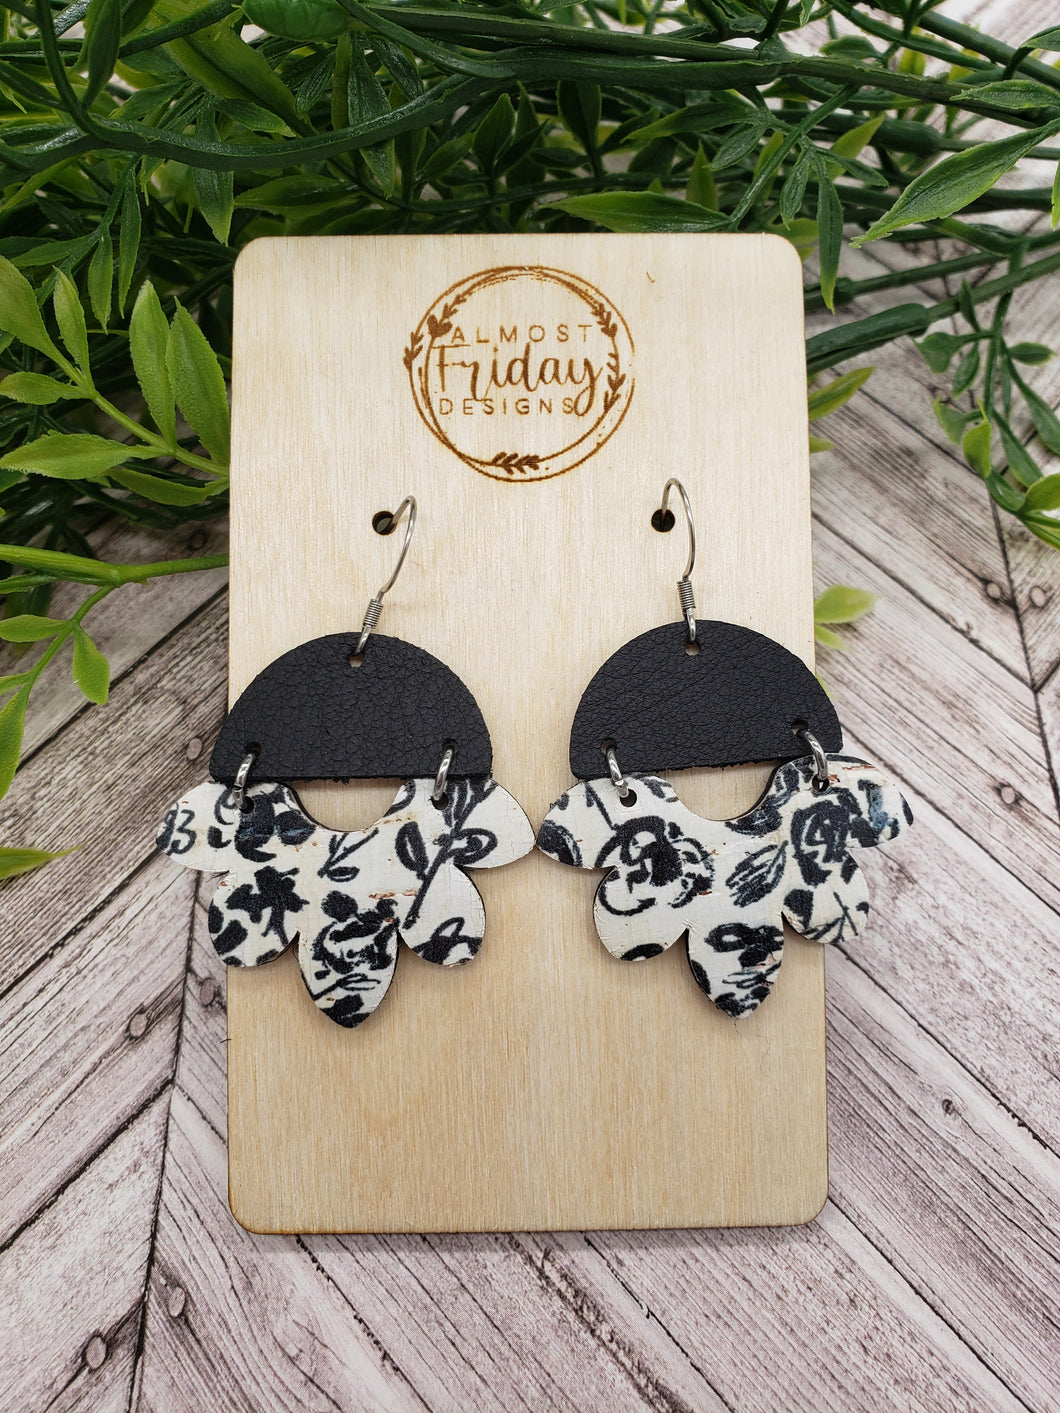 Genuine Leather Earrings - Petal - Scallop - Black and White Earrings - Flower Earrings - Floral Print - Statement Earrings